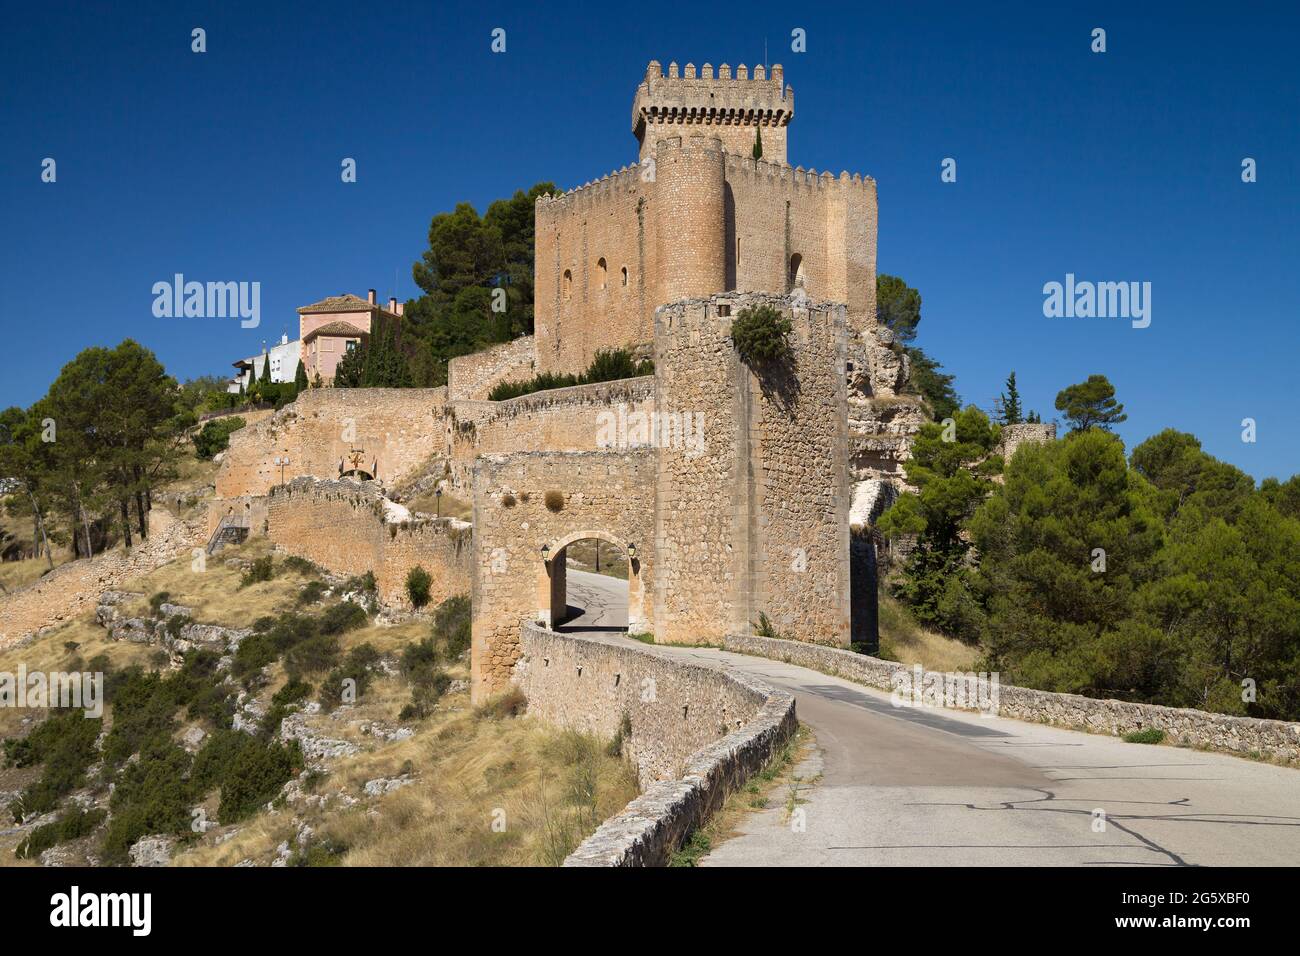 Castle of Alarcon, Cuenca, Spain. Stock Photo